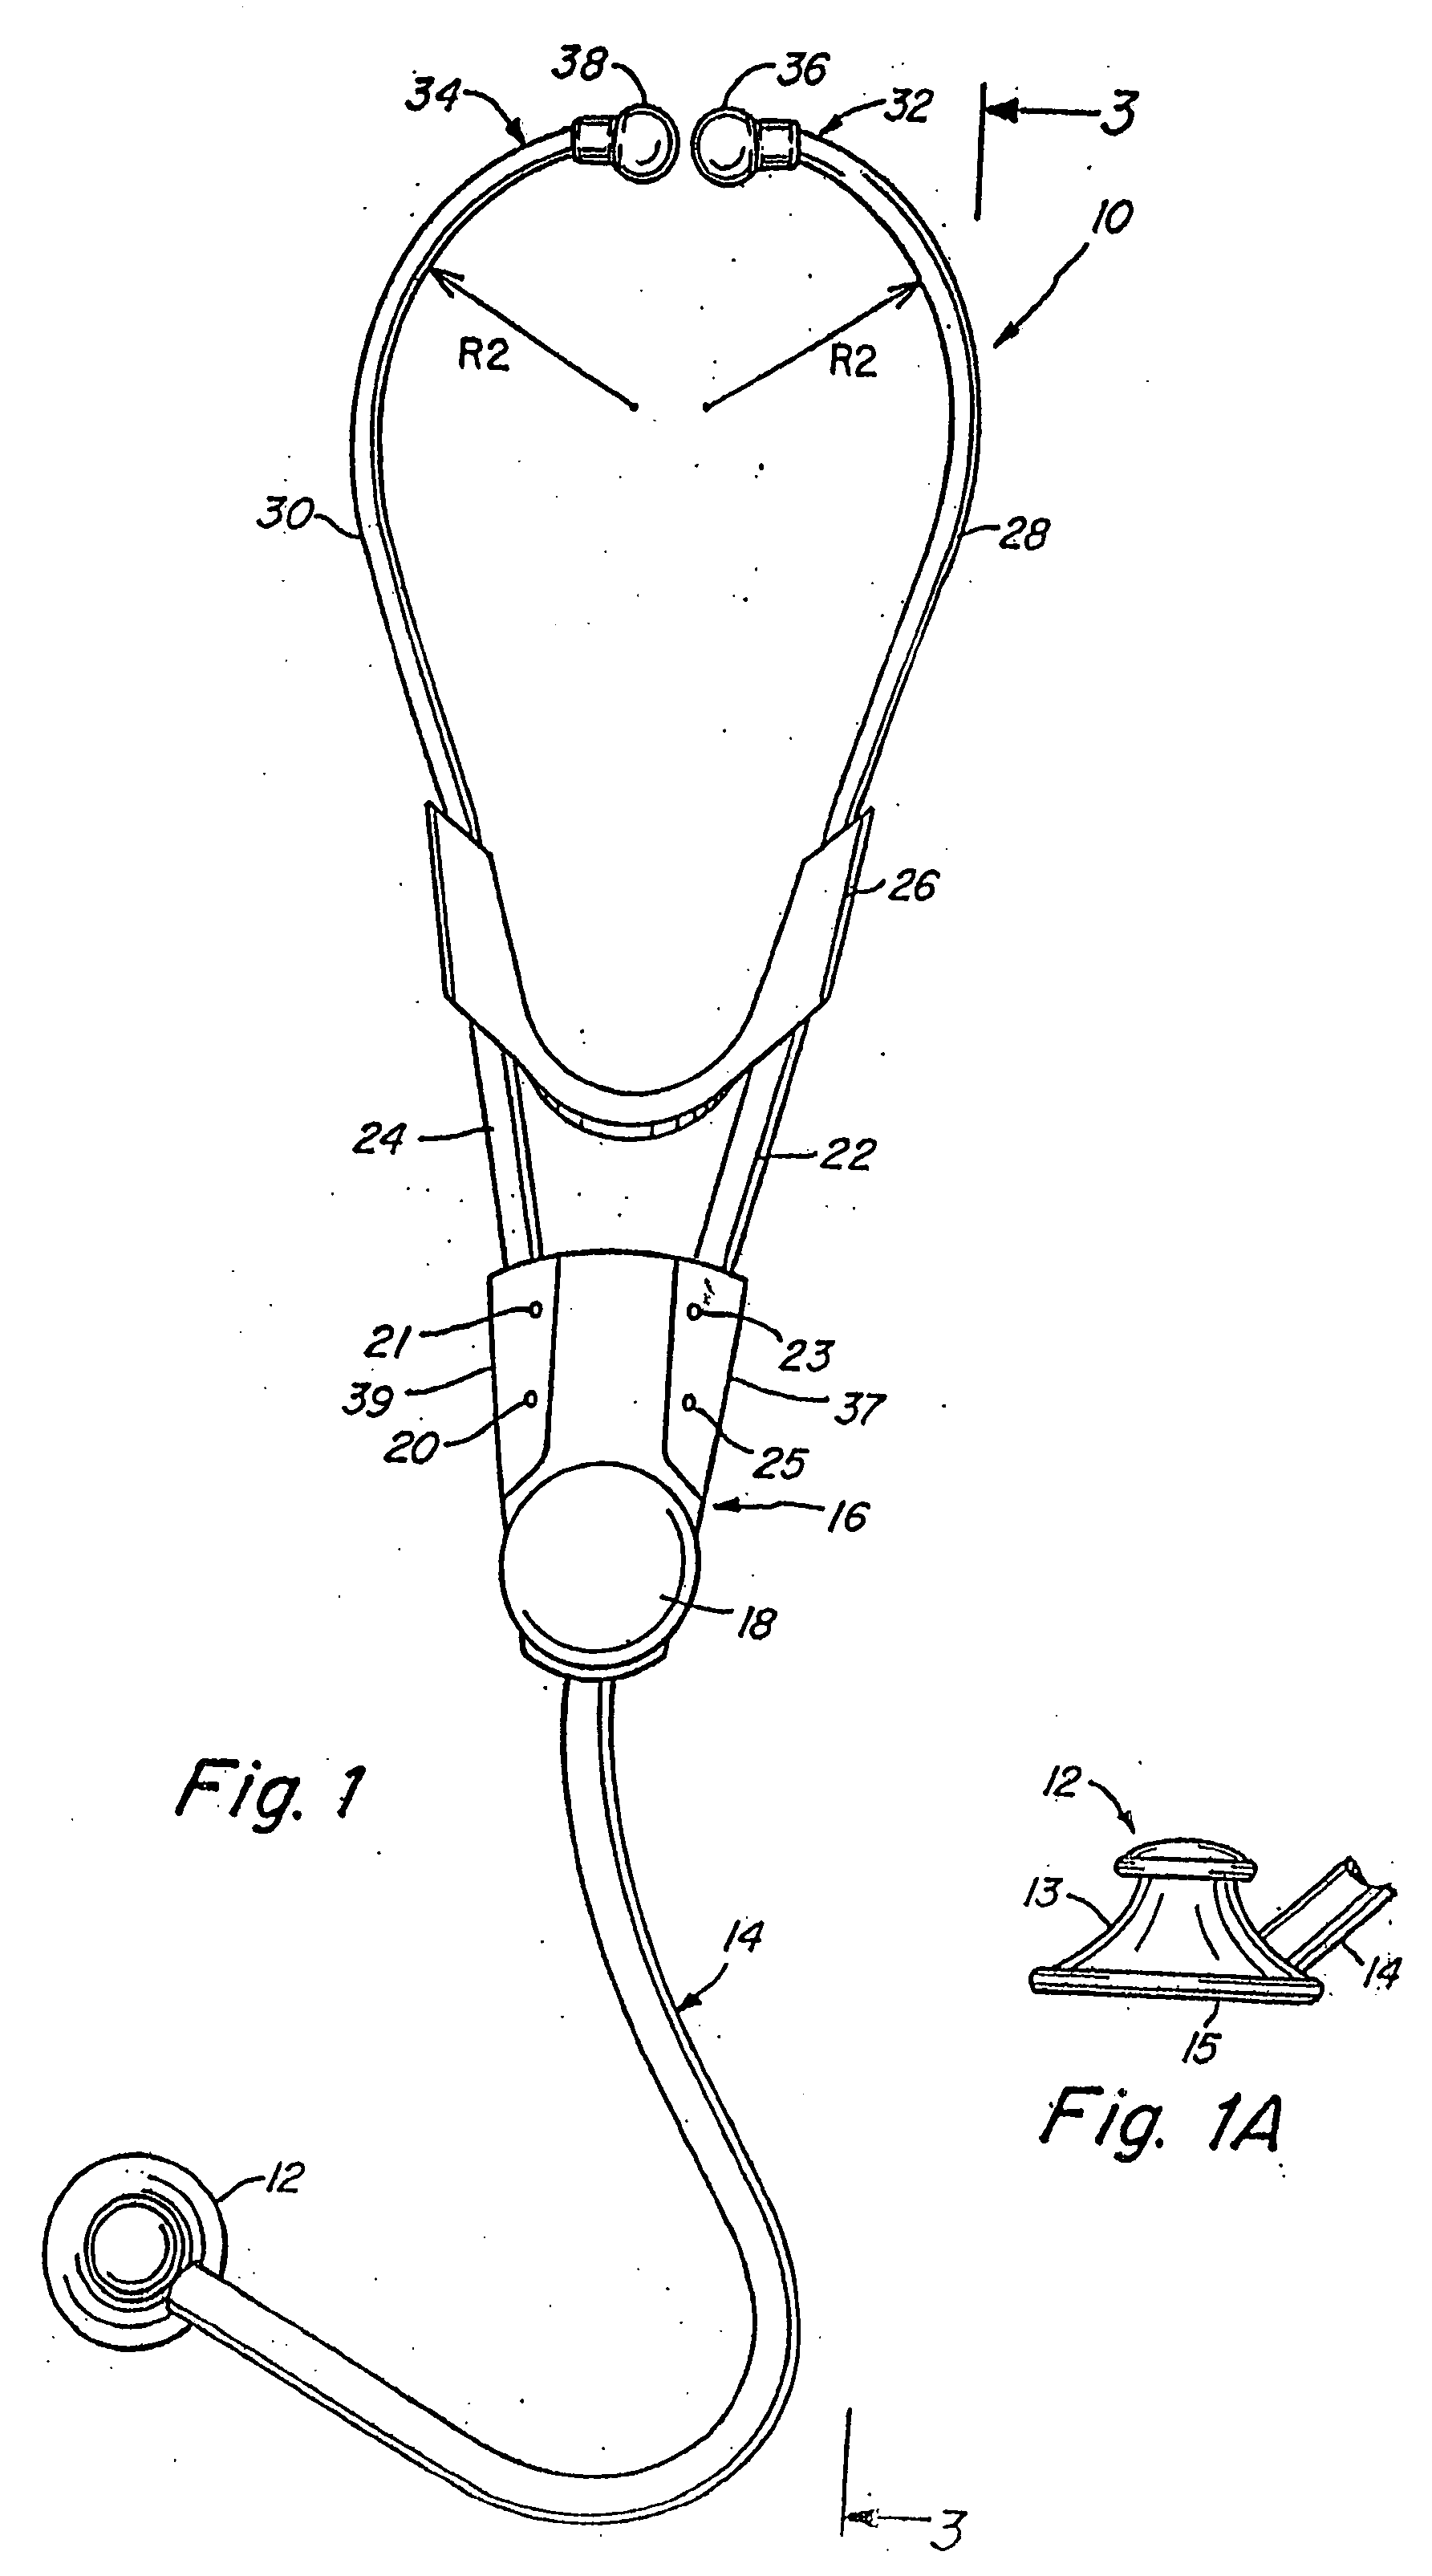 Electronic stethoscope